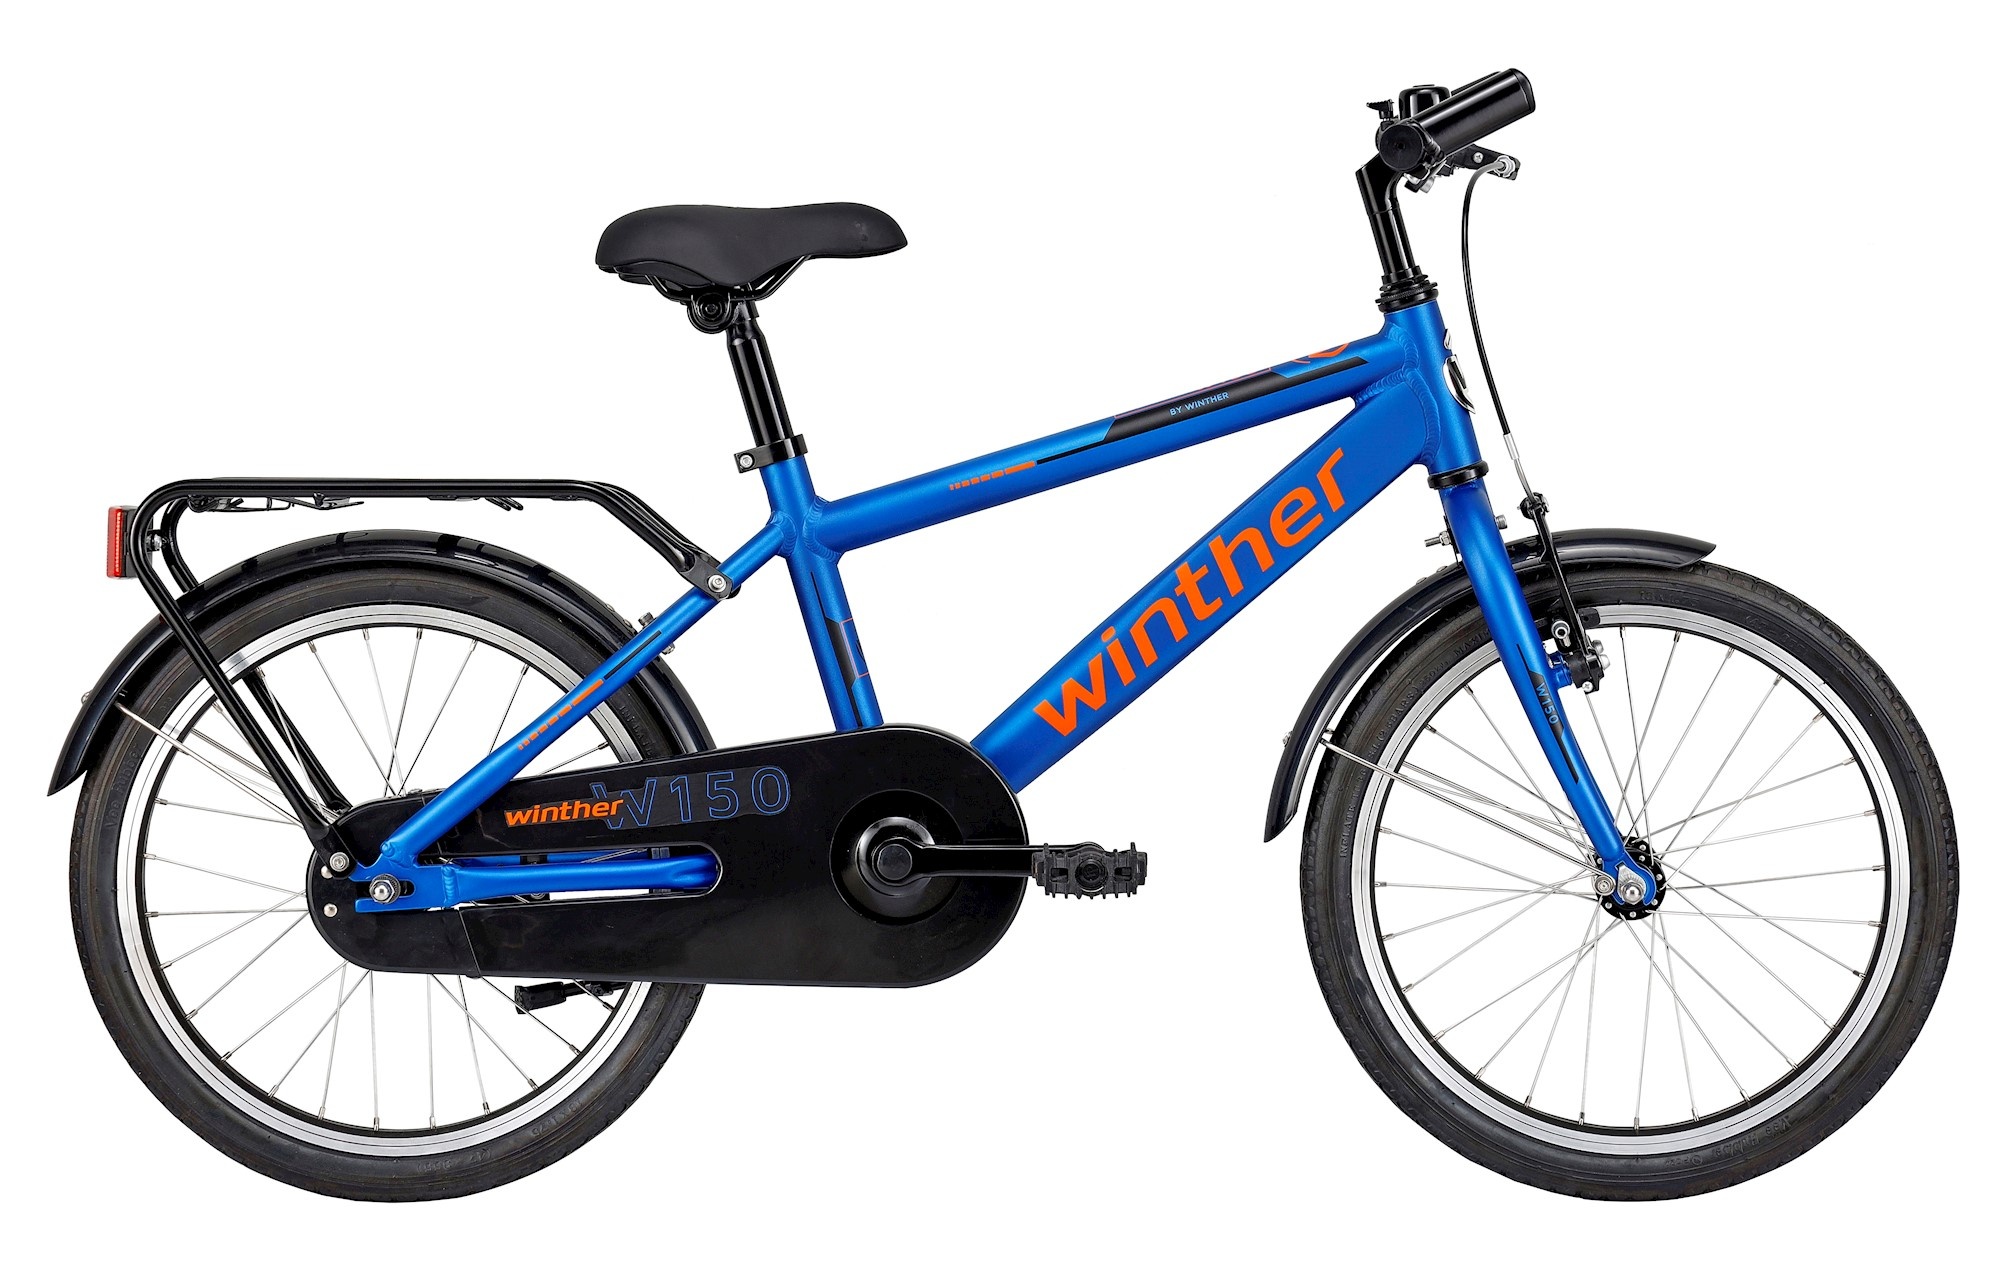 Cykler - Børnecykler - Winther 150 18" Dreng 1g 2023 - Blå